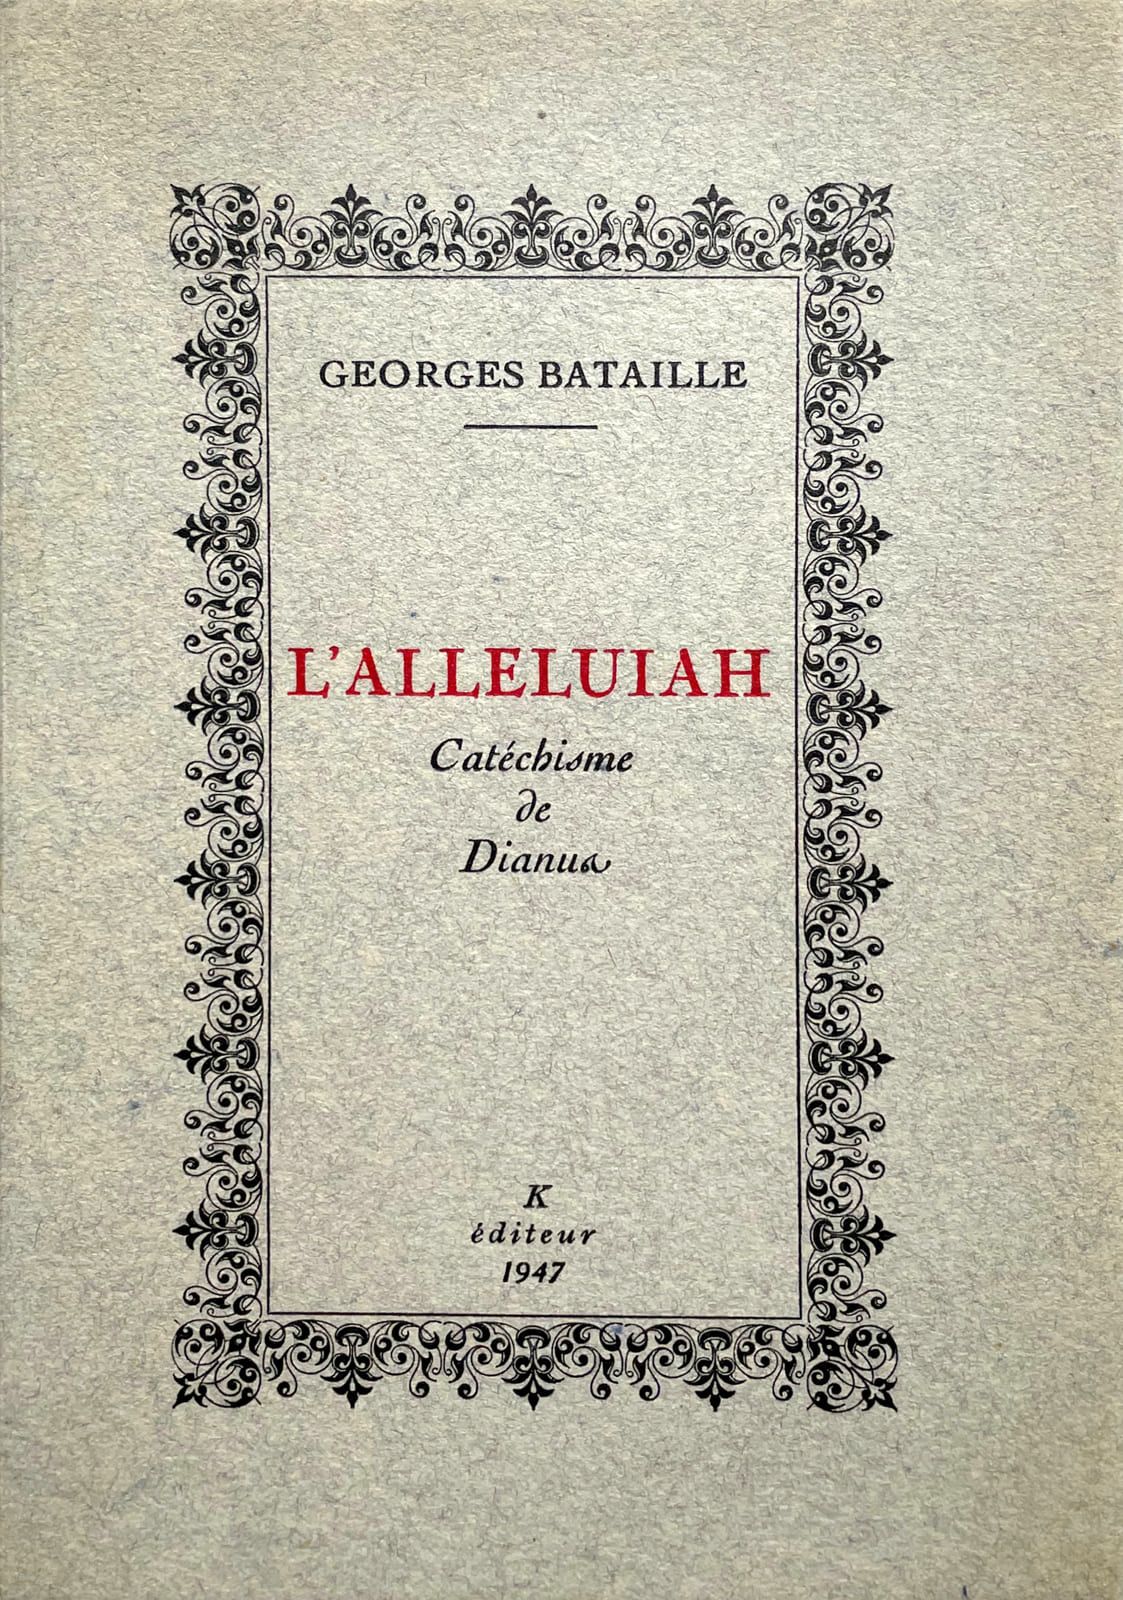 BATAILLE (Georges). Das Halleluja. Katechismus des Dianus. Paris, K Editor, 1947&hellip;